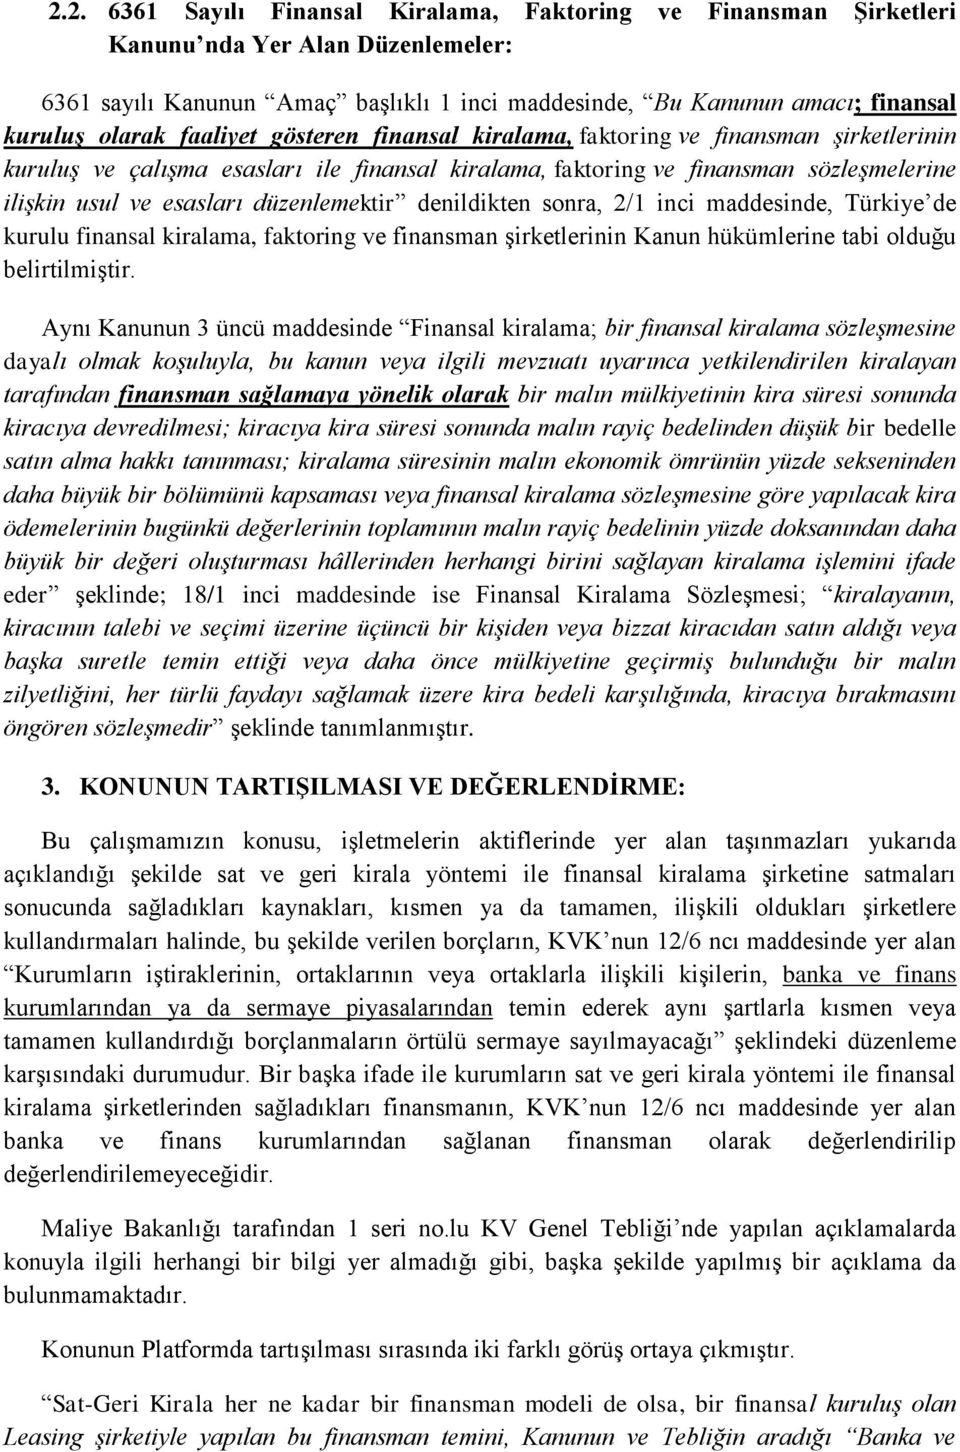 düzenlemektir denildikten sonra, 2/1 inci maddesinde, Türkiye de kurulu finansal kiralama, faktoring ve finansman şirketlerinin Kanun hükümlerine tabi olduğu belirtilmiştir.